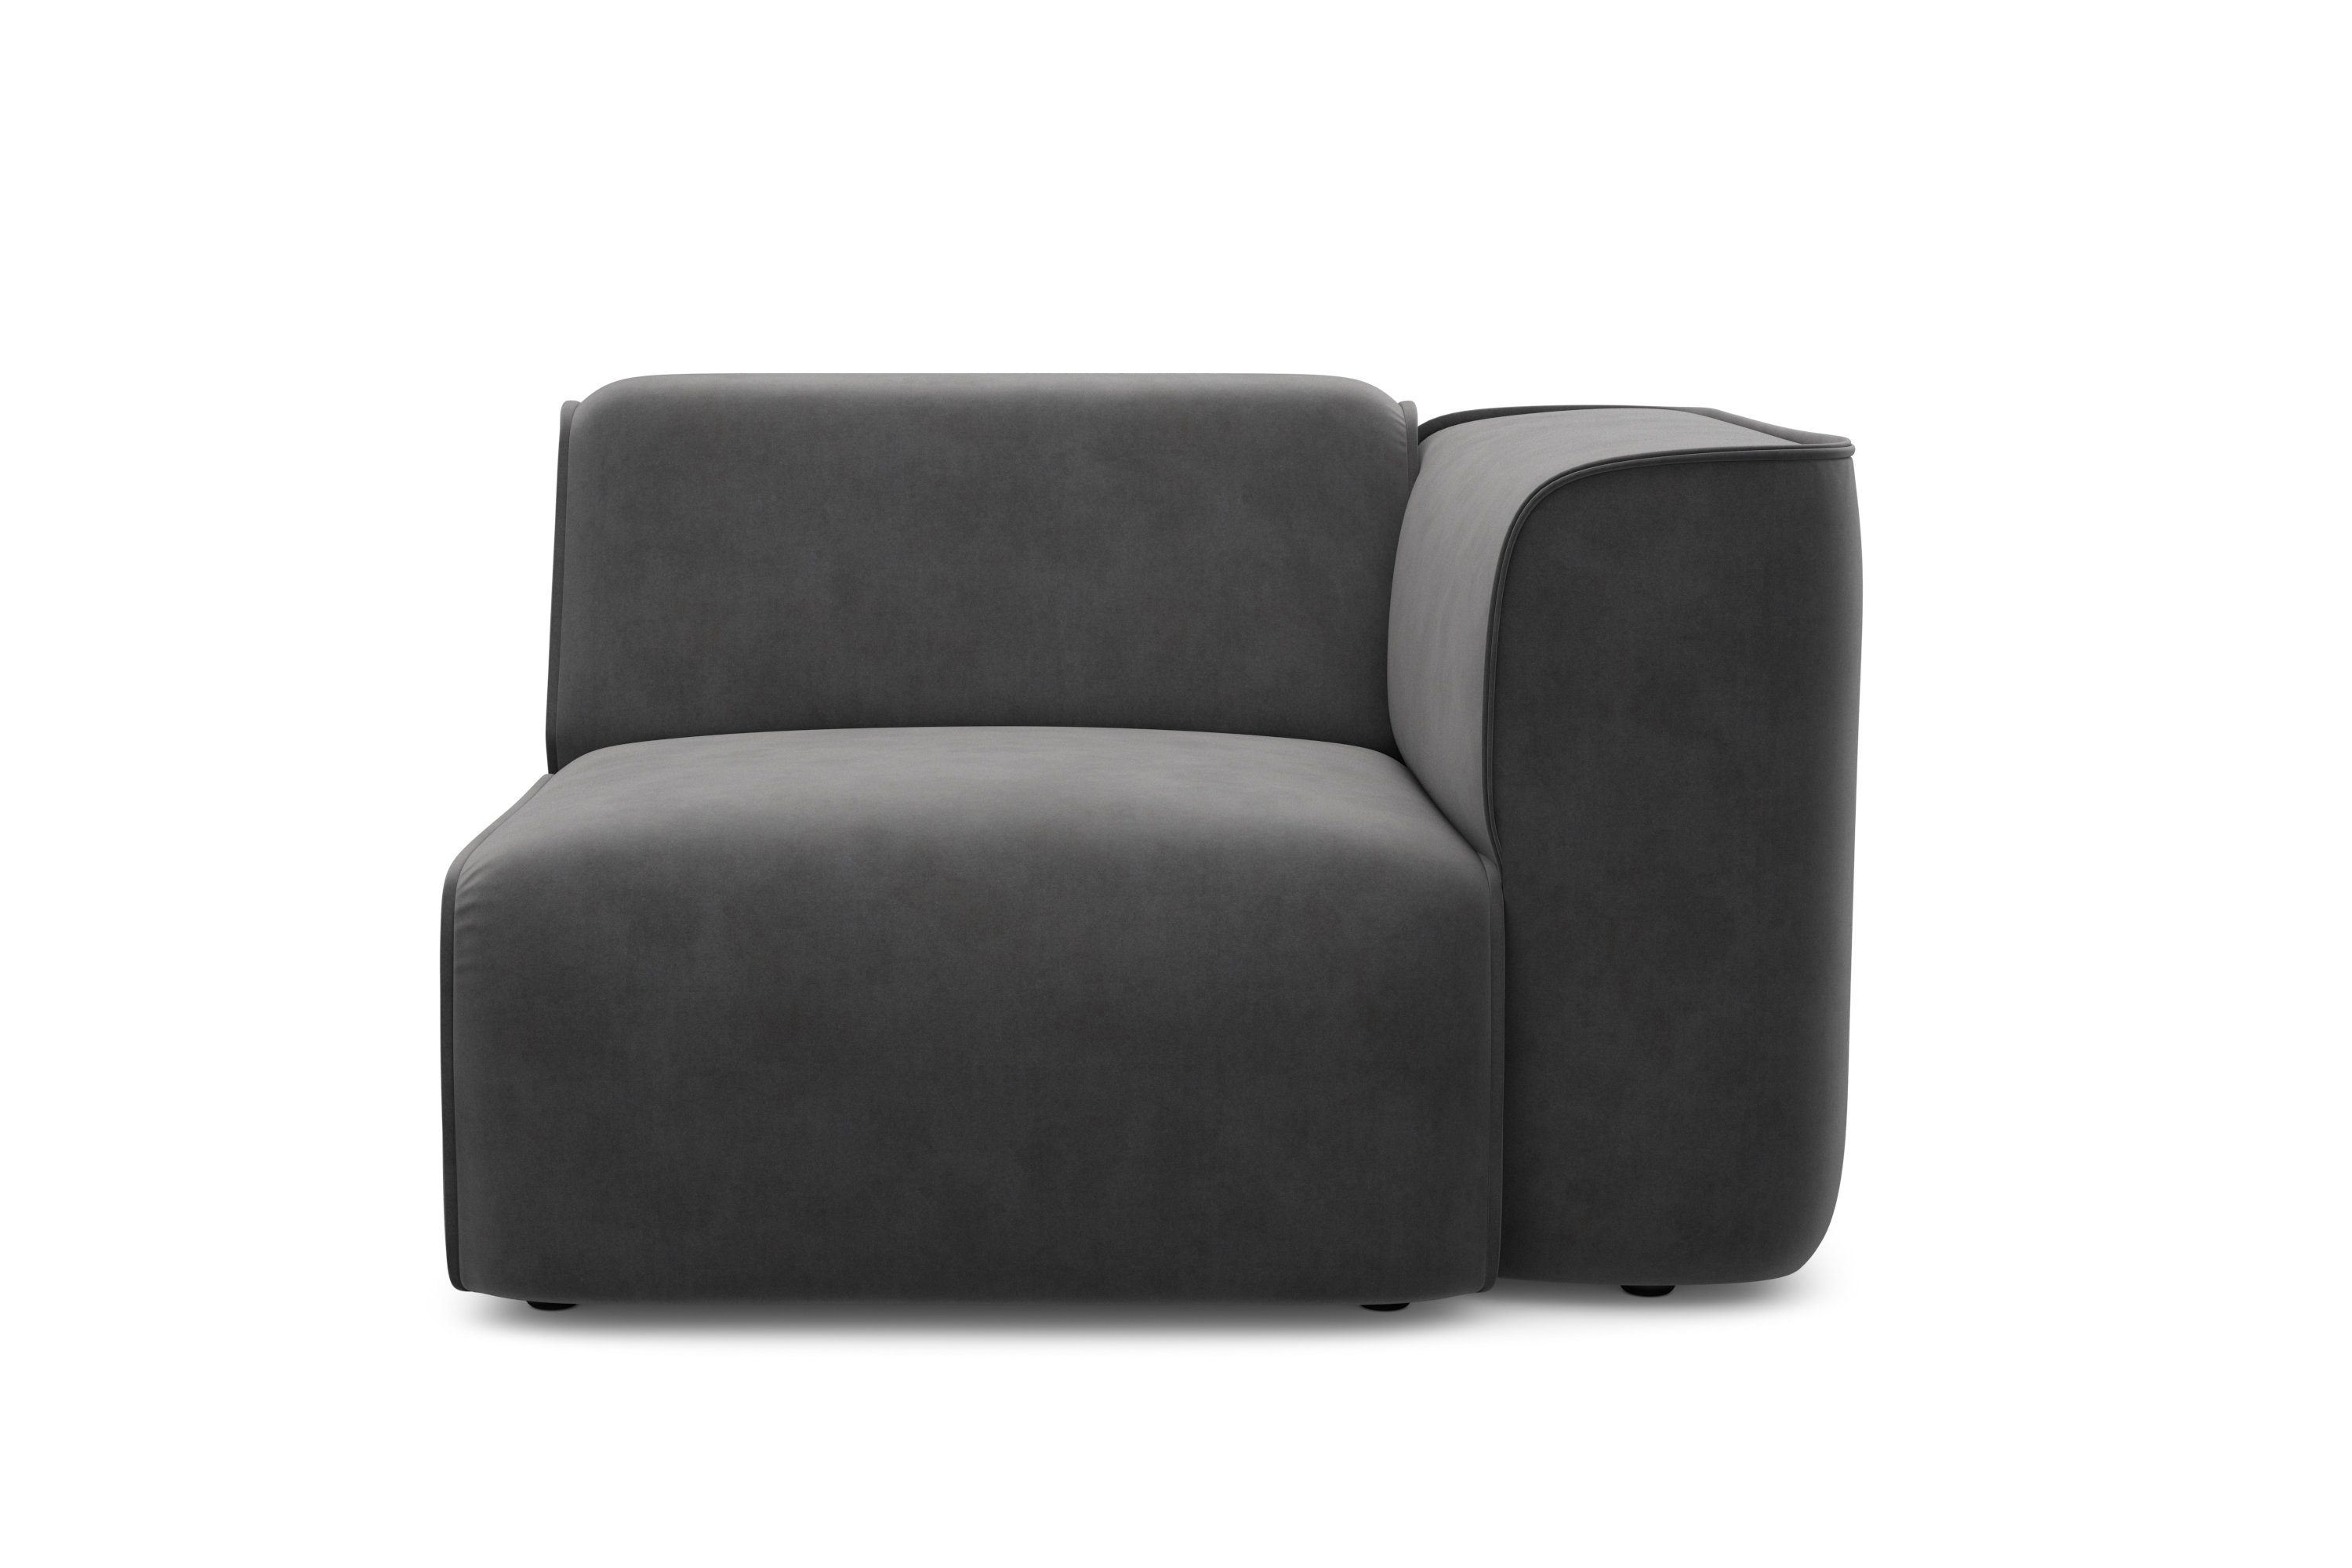 COUCH ♥ Fauteuil Vette bekleding modulair of solo te gebruiken, vele modules voor individuele samenstelling couch favorieten